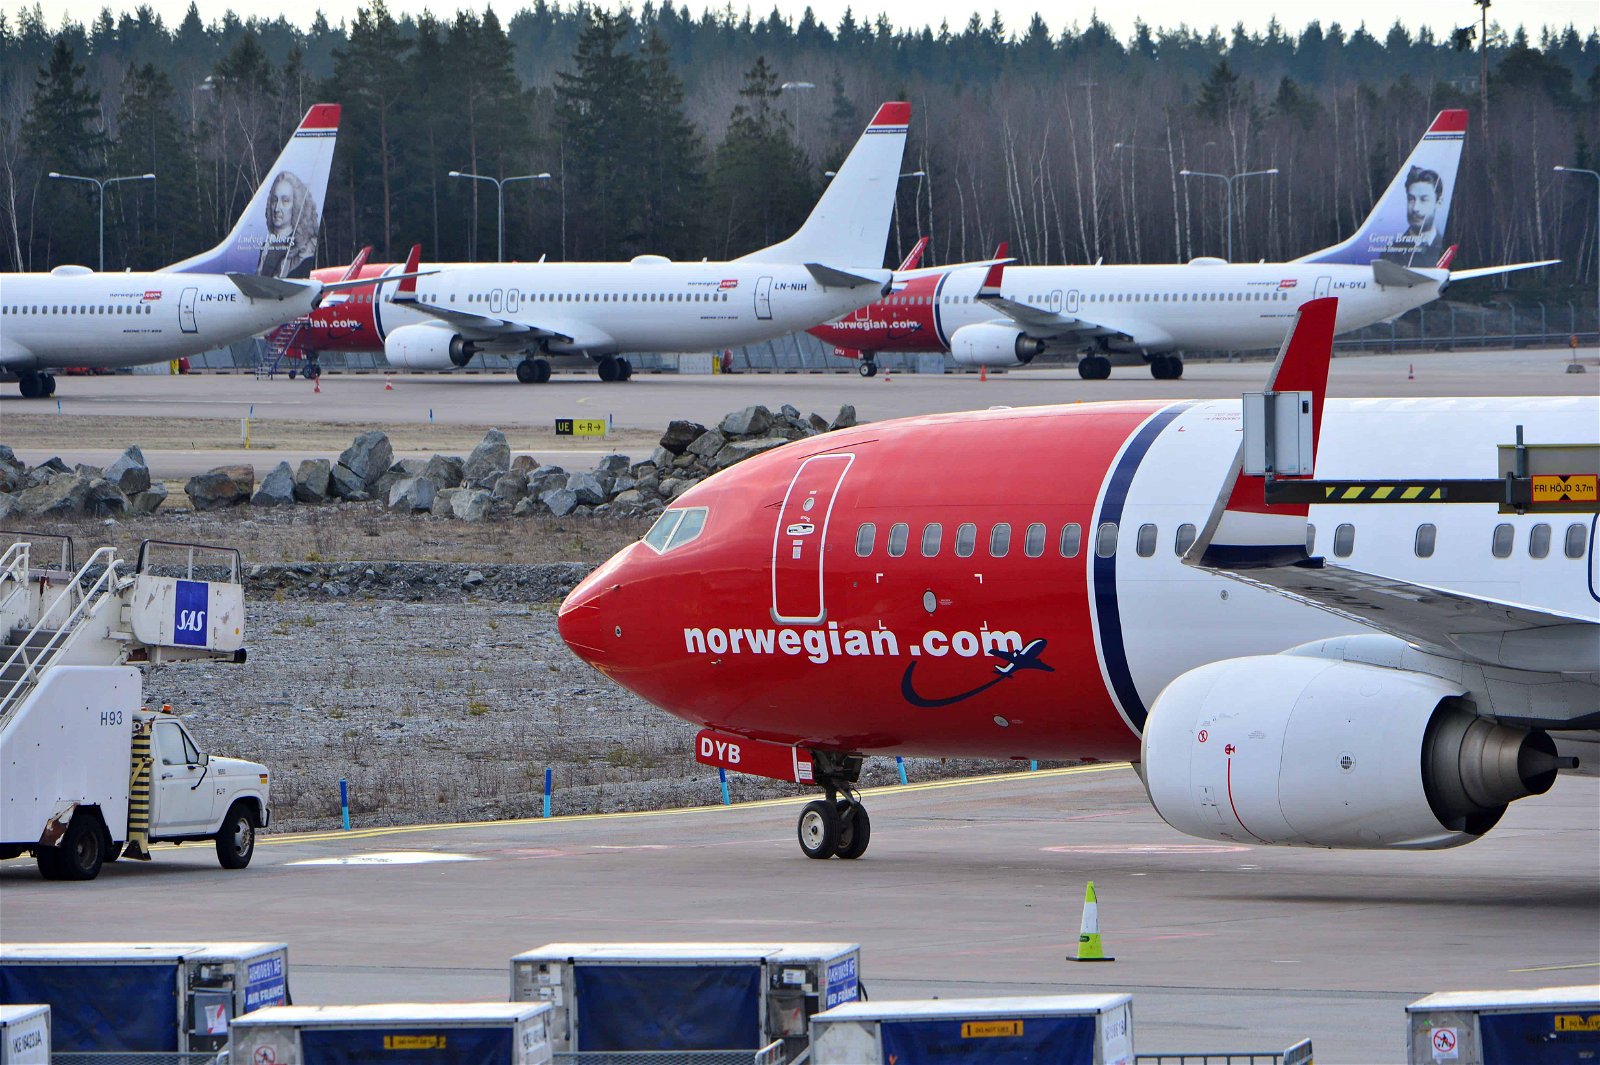 Vliegtuigen van Norwegian staan naast elkaar.